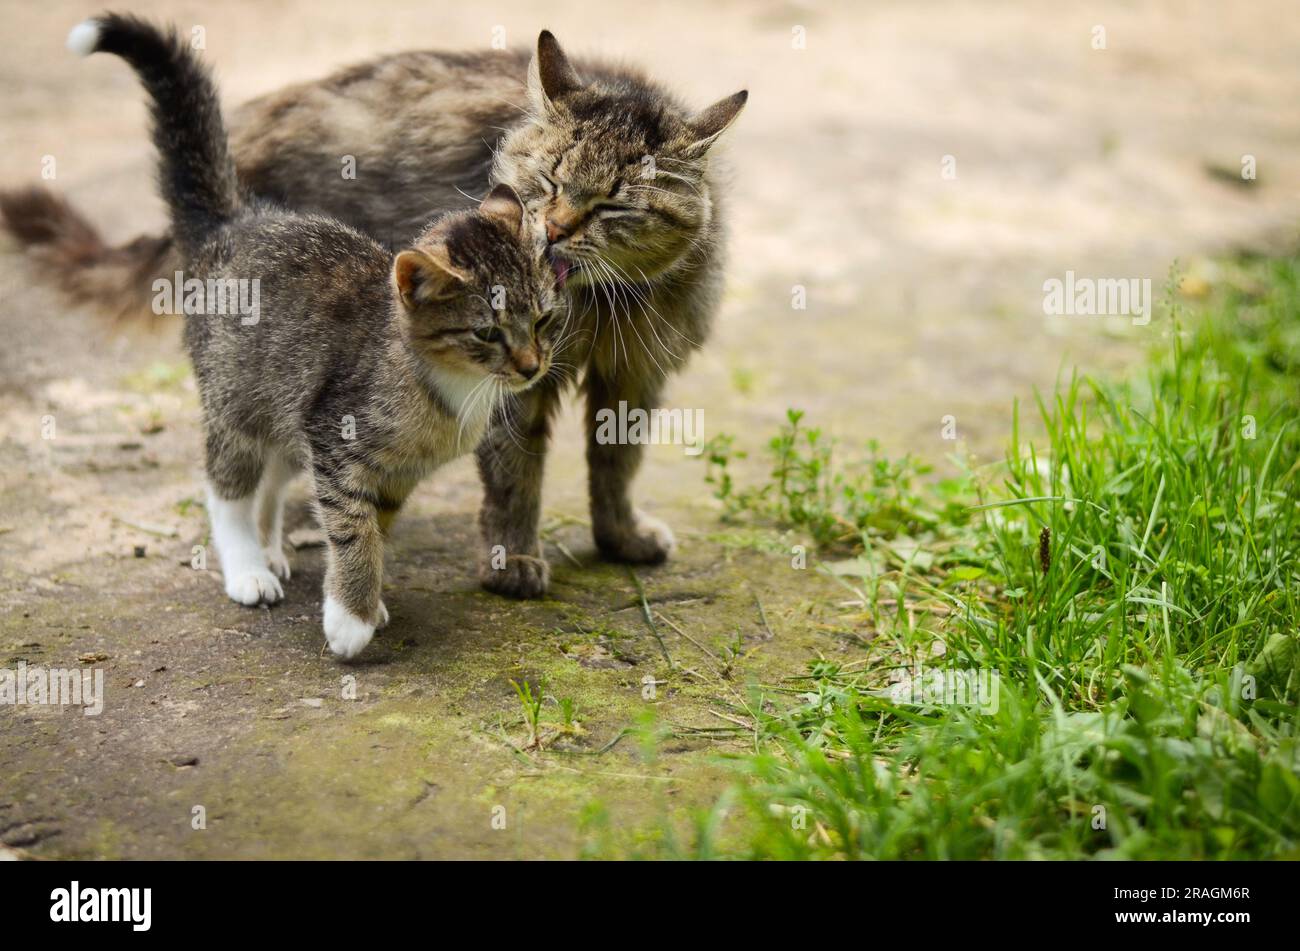 Cat mom licking her kitten Stock Photo